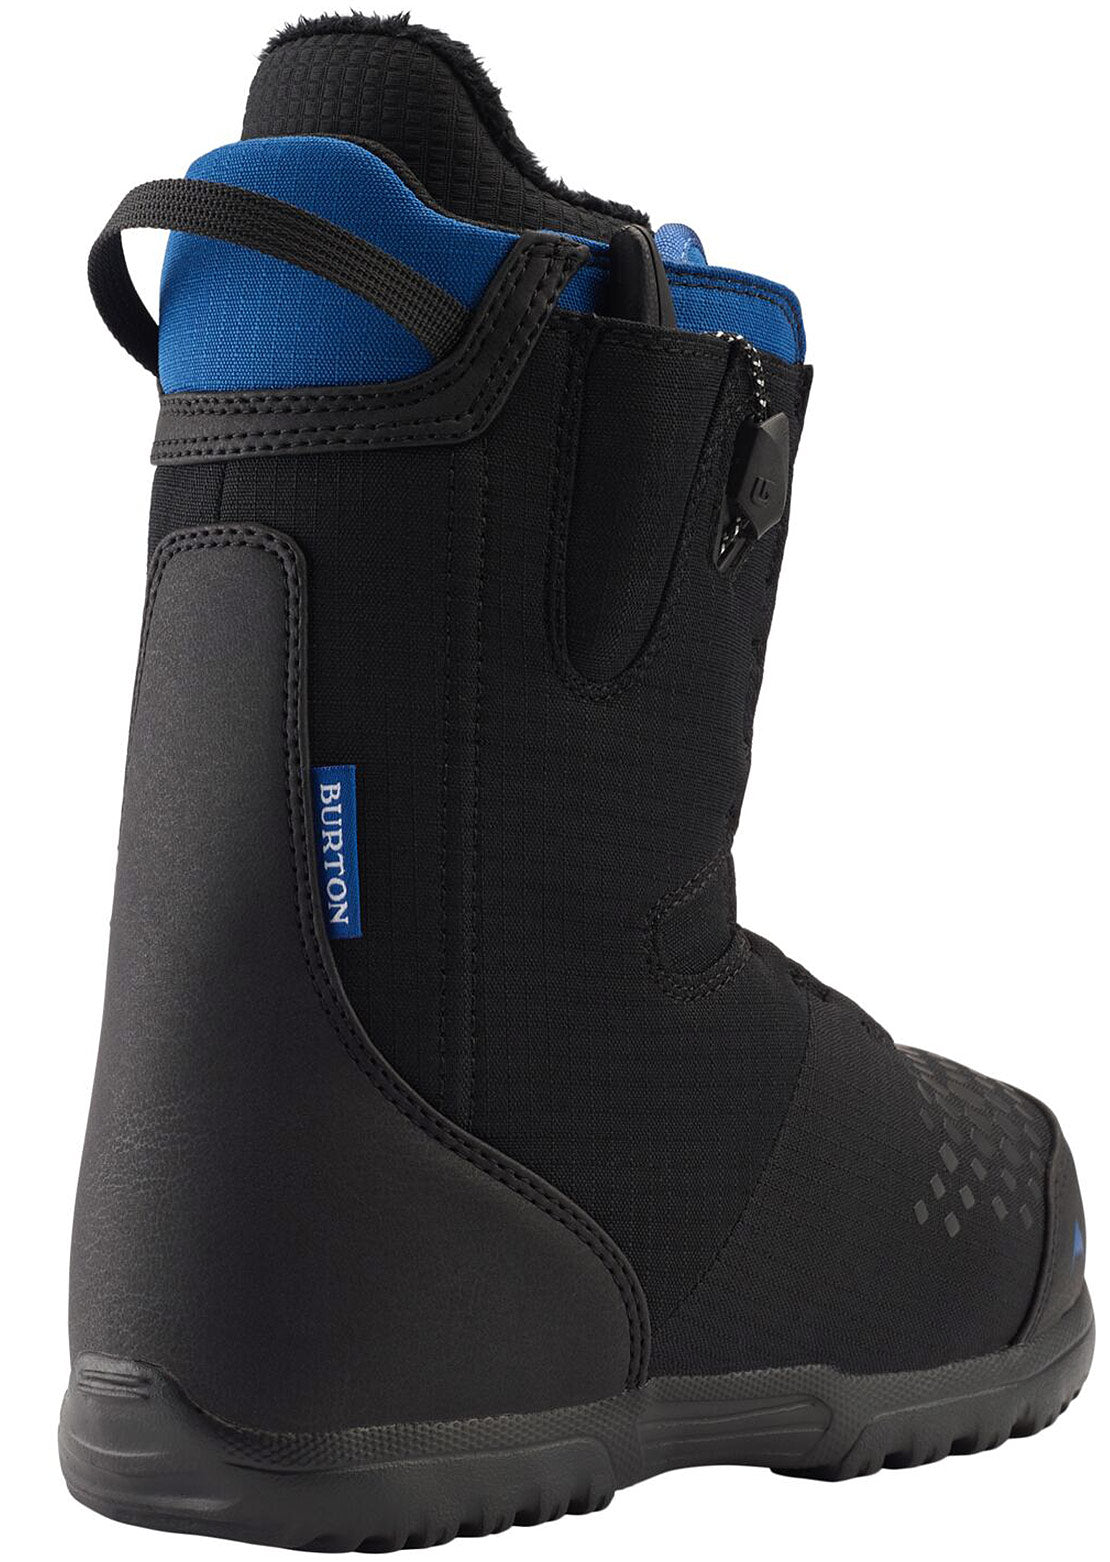 Burton Junior Concord Smalls Snowboard Boots Black/Blue